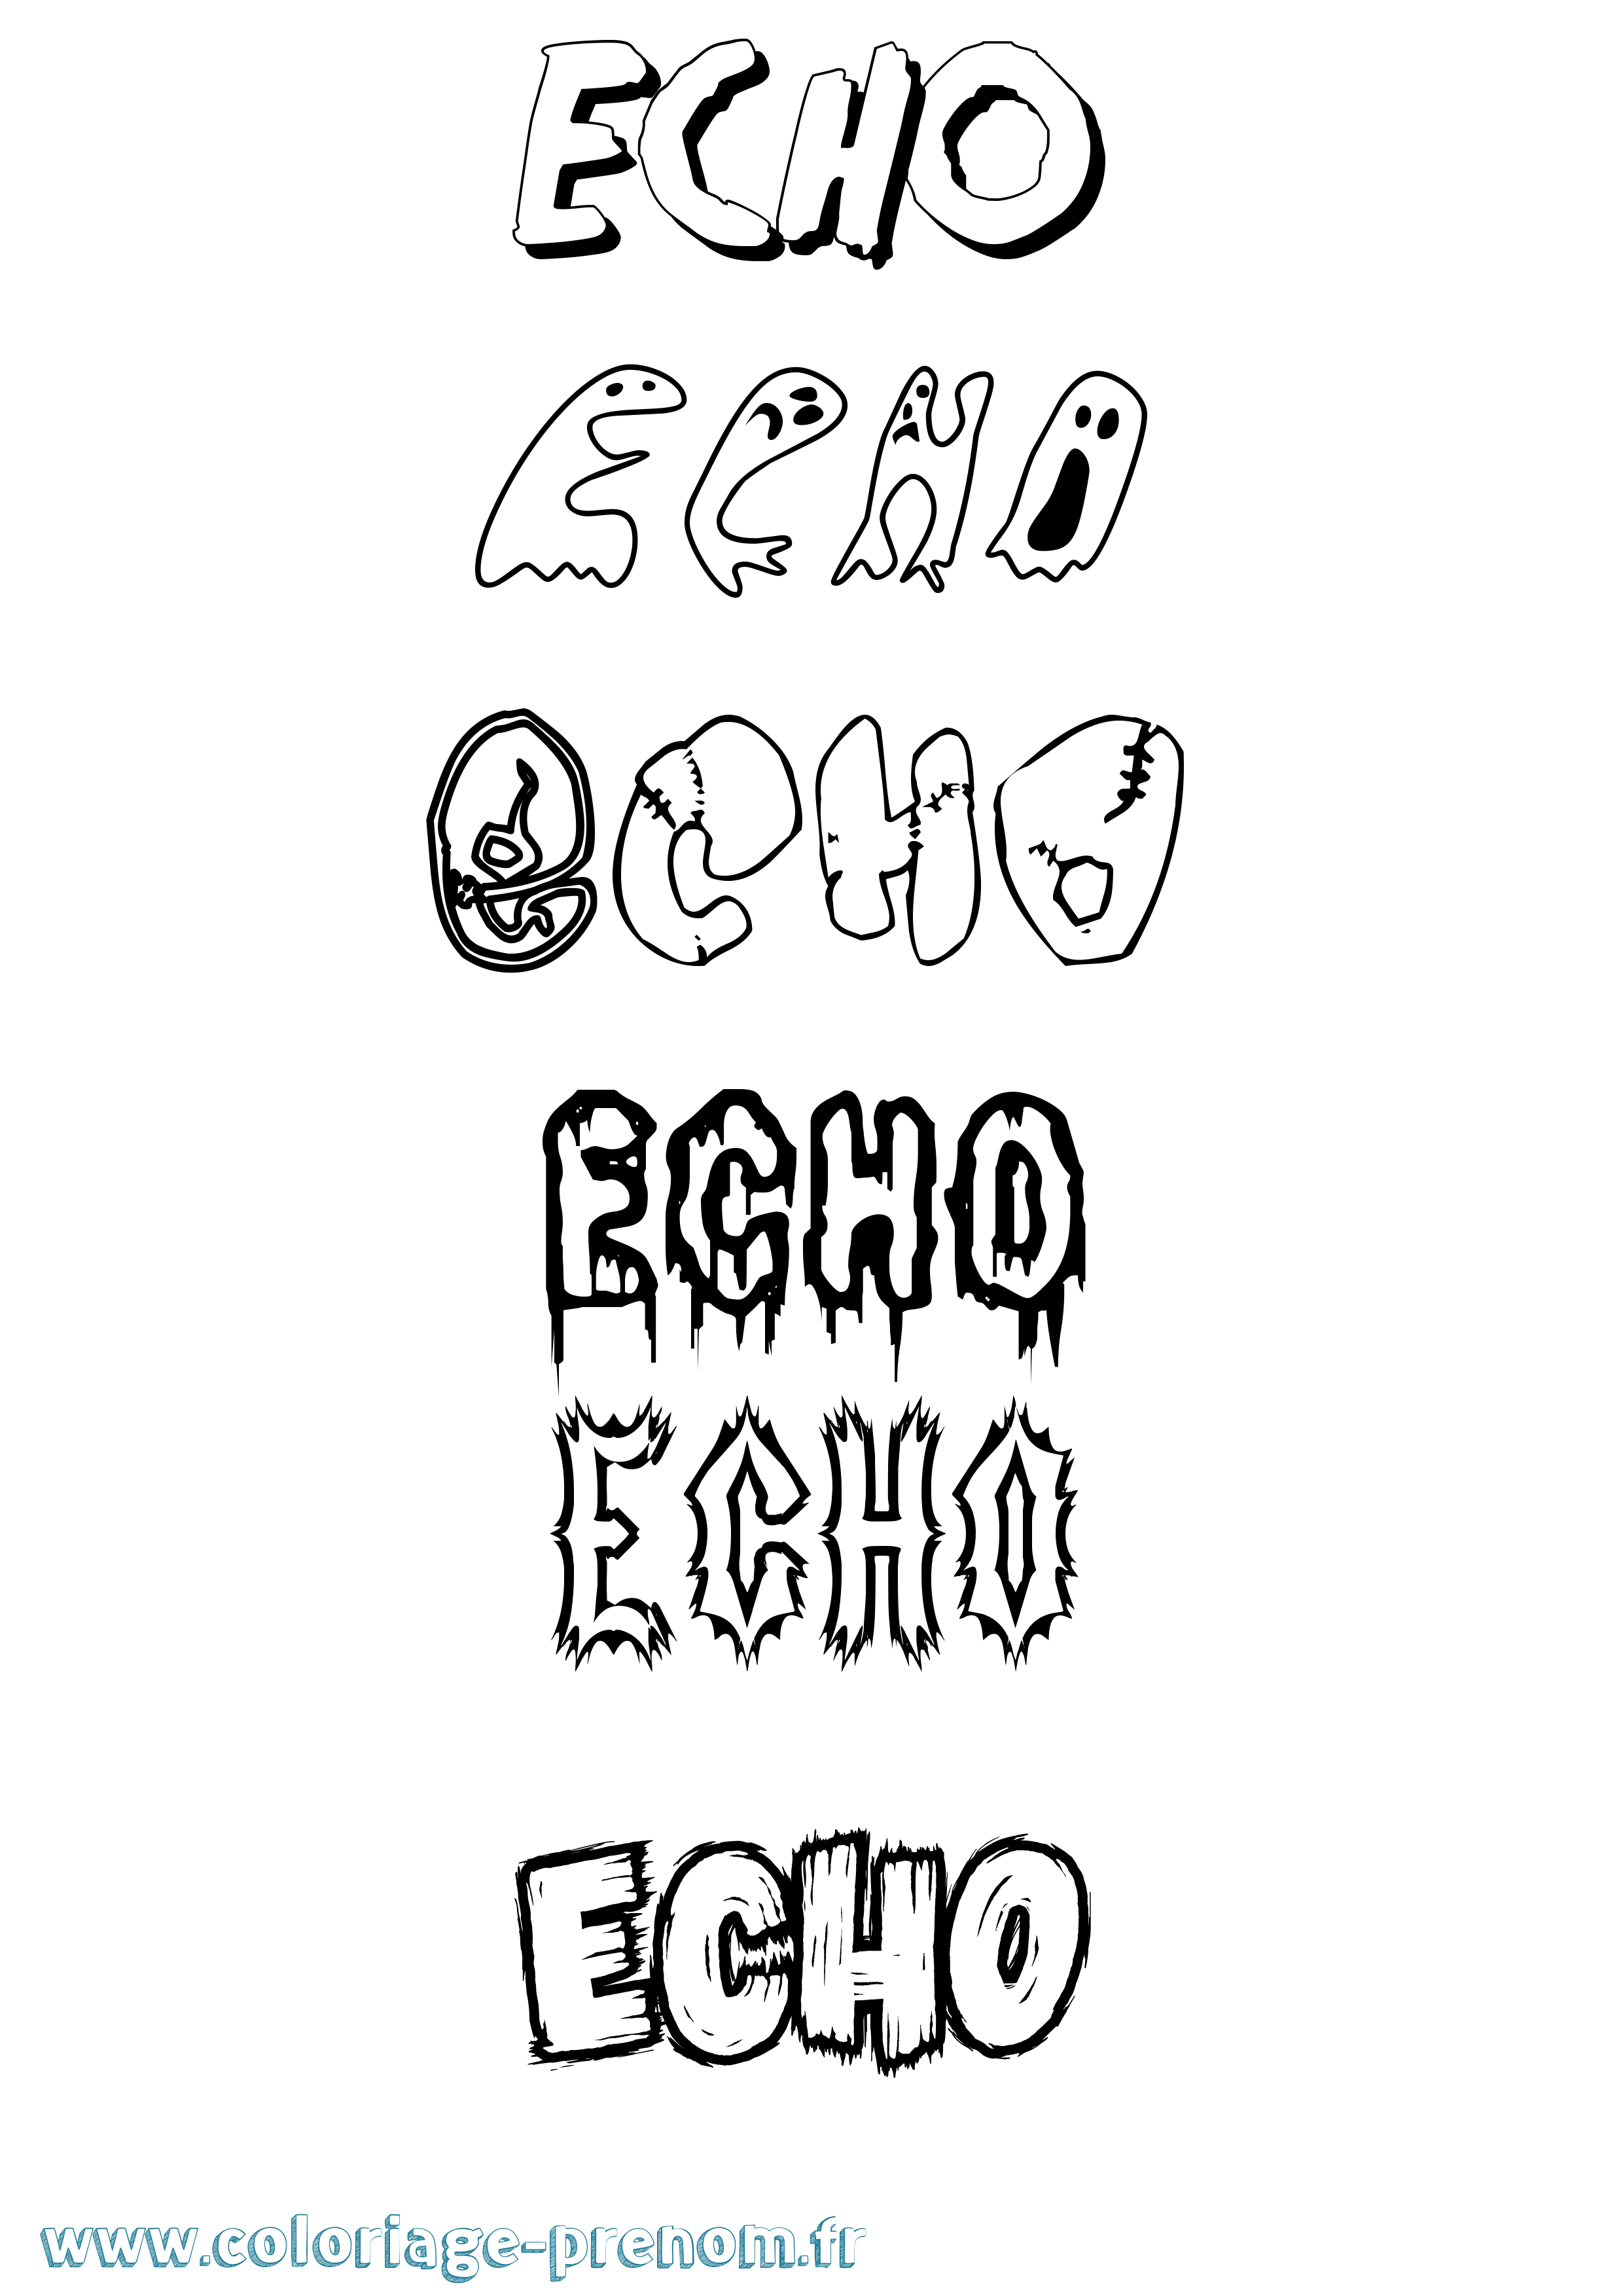 Coloriage prénom Echo Frisson